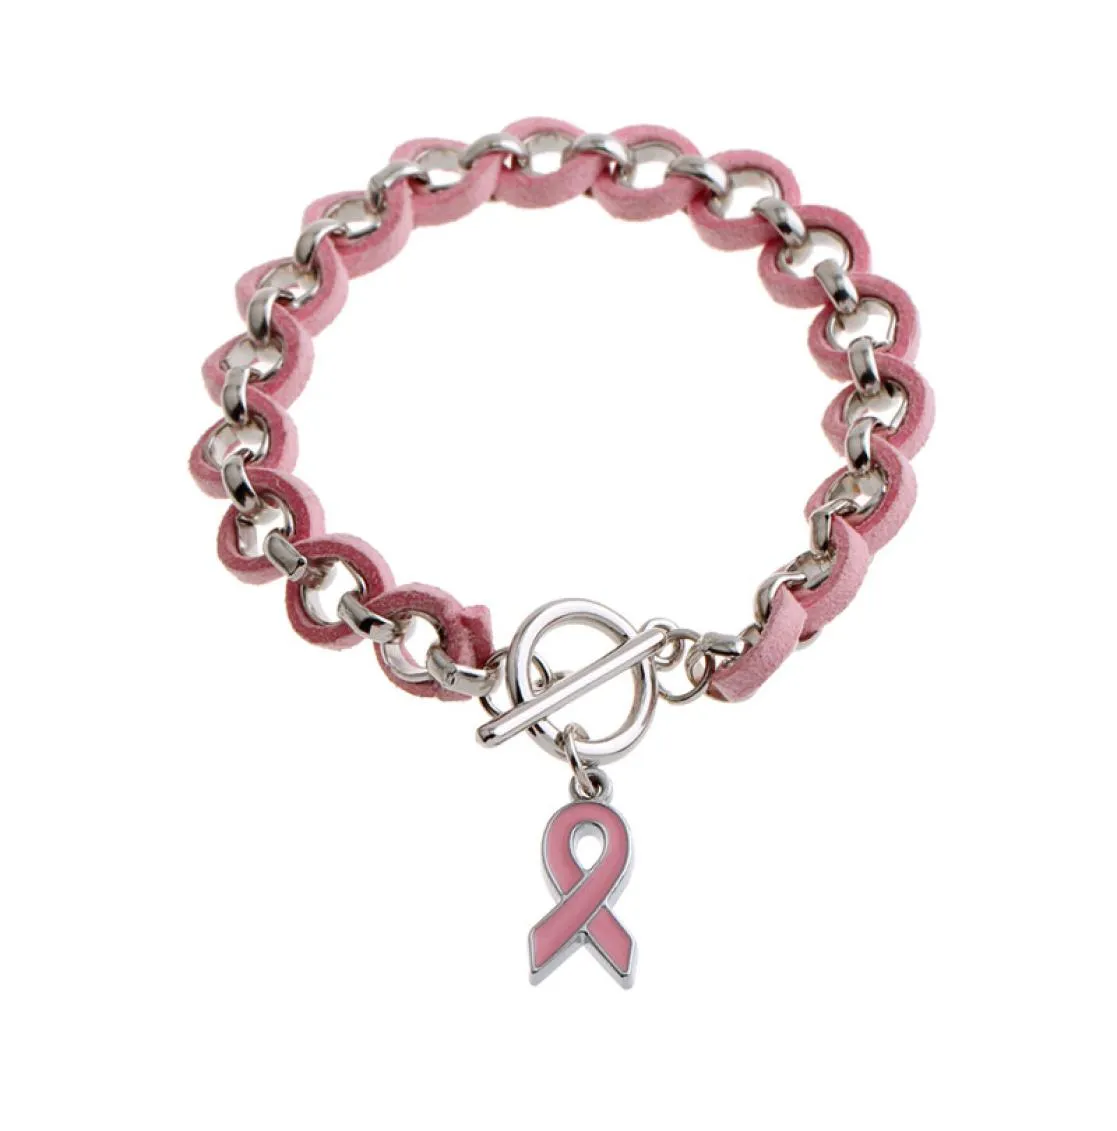 Wholenew Pink Ribbon Cáncer de mama Concienciamiento de la vigilia de la visera Bracelets brazaletes de la aleación rosa amor cinta chenille boving brace9028599